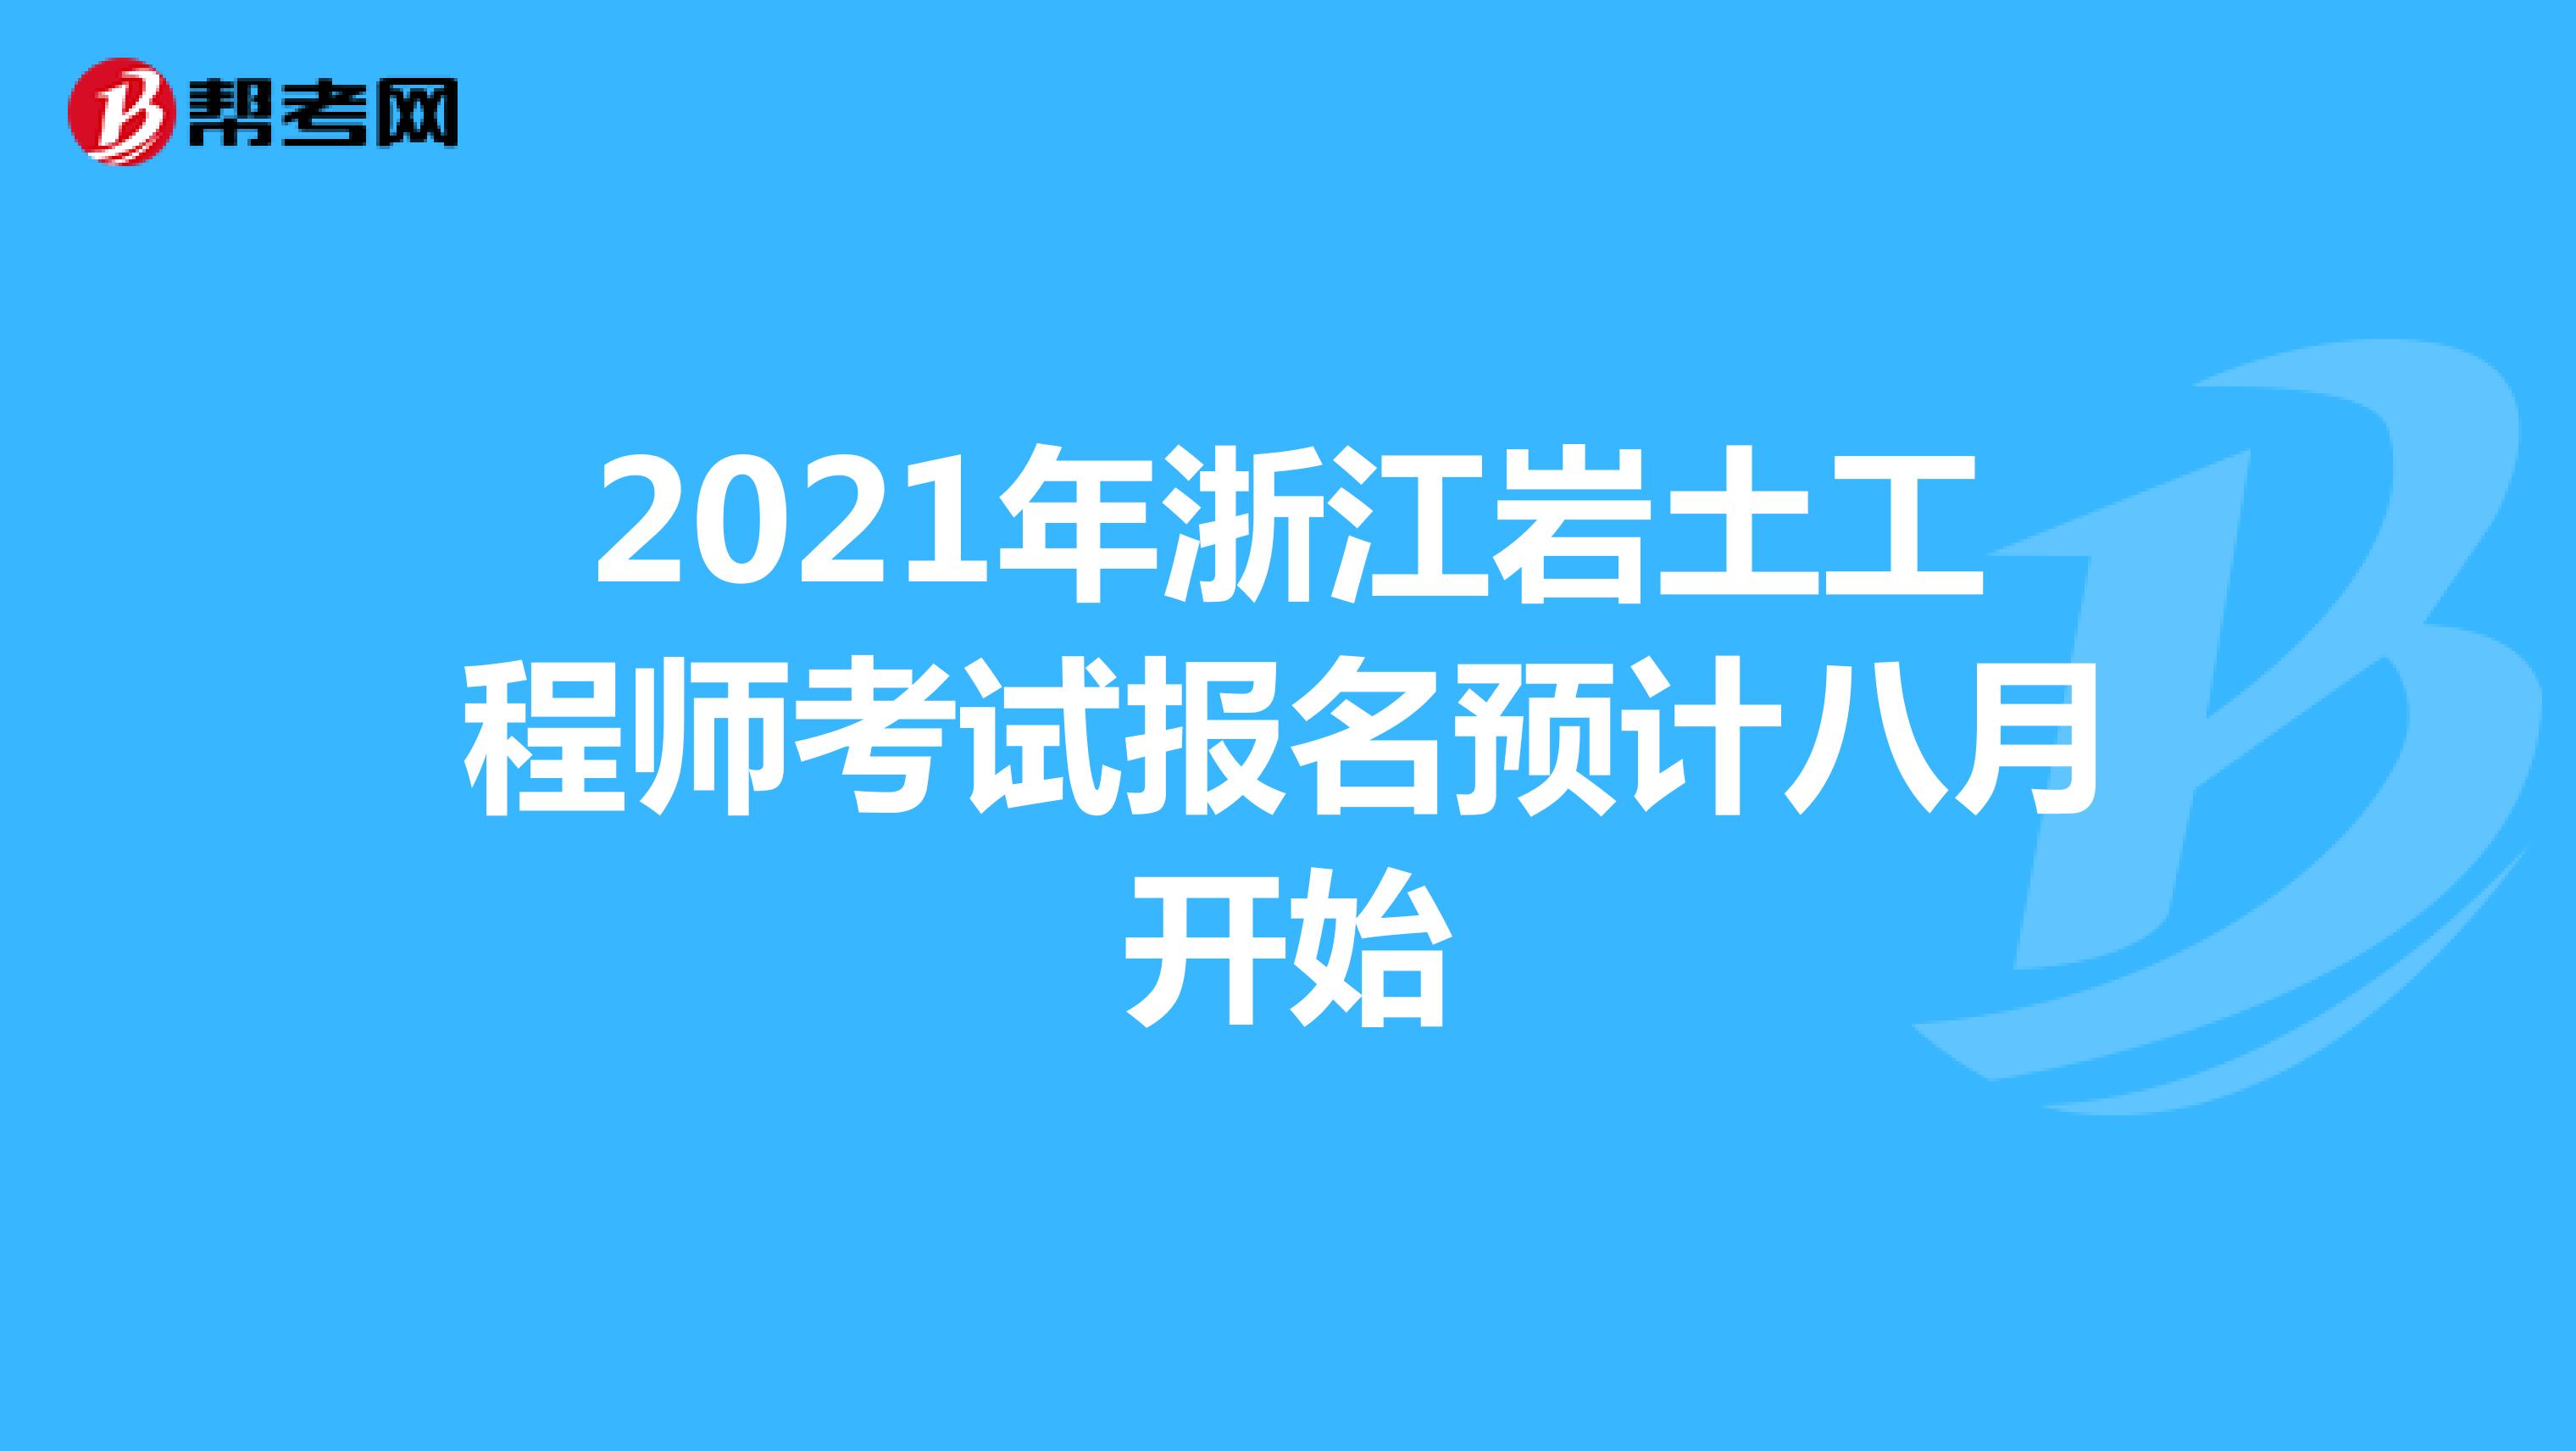 2021年浙江岩土工程师考试报名预计八月开始